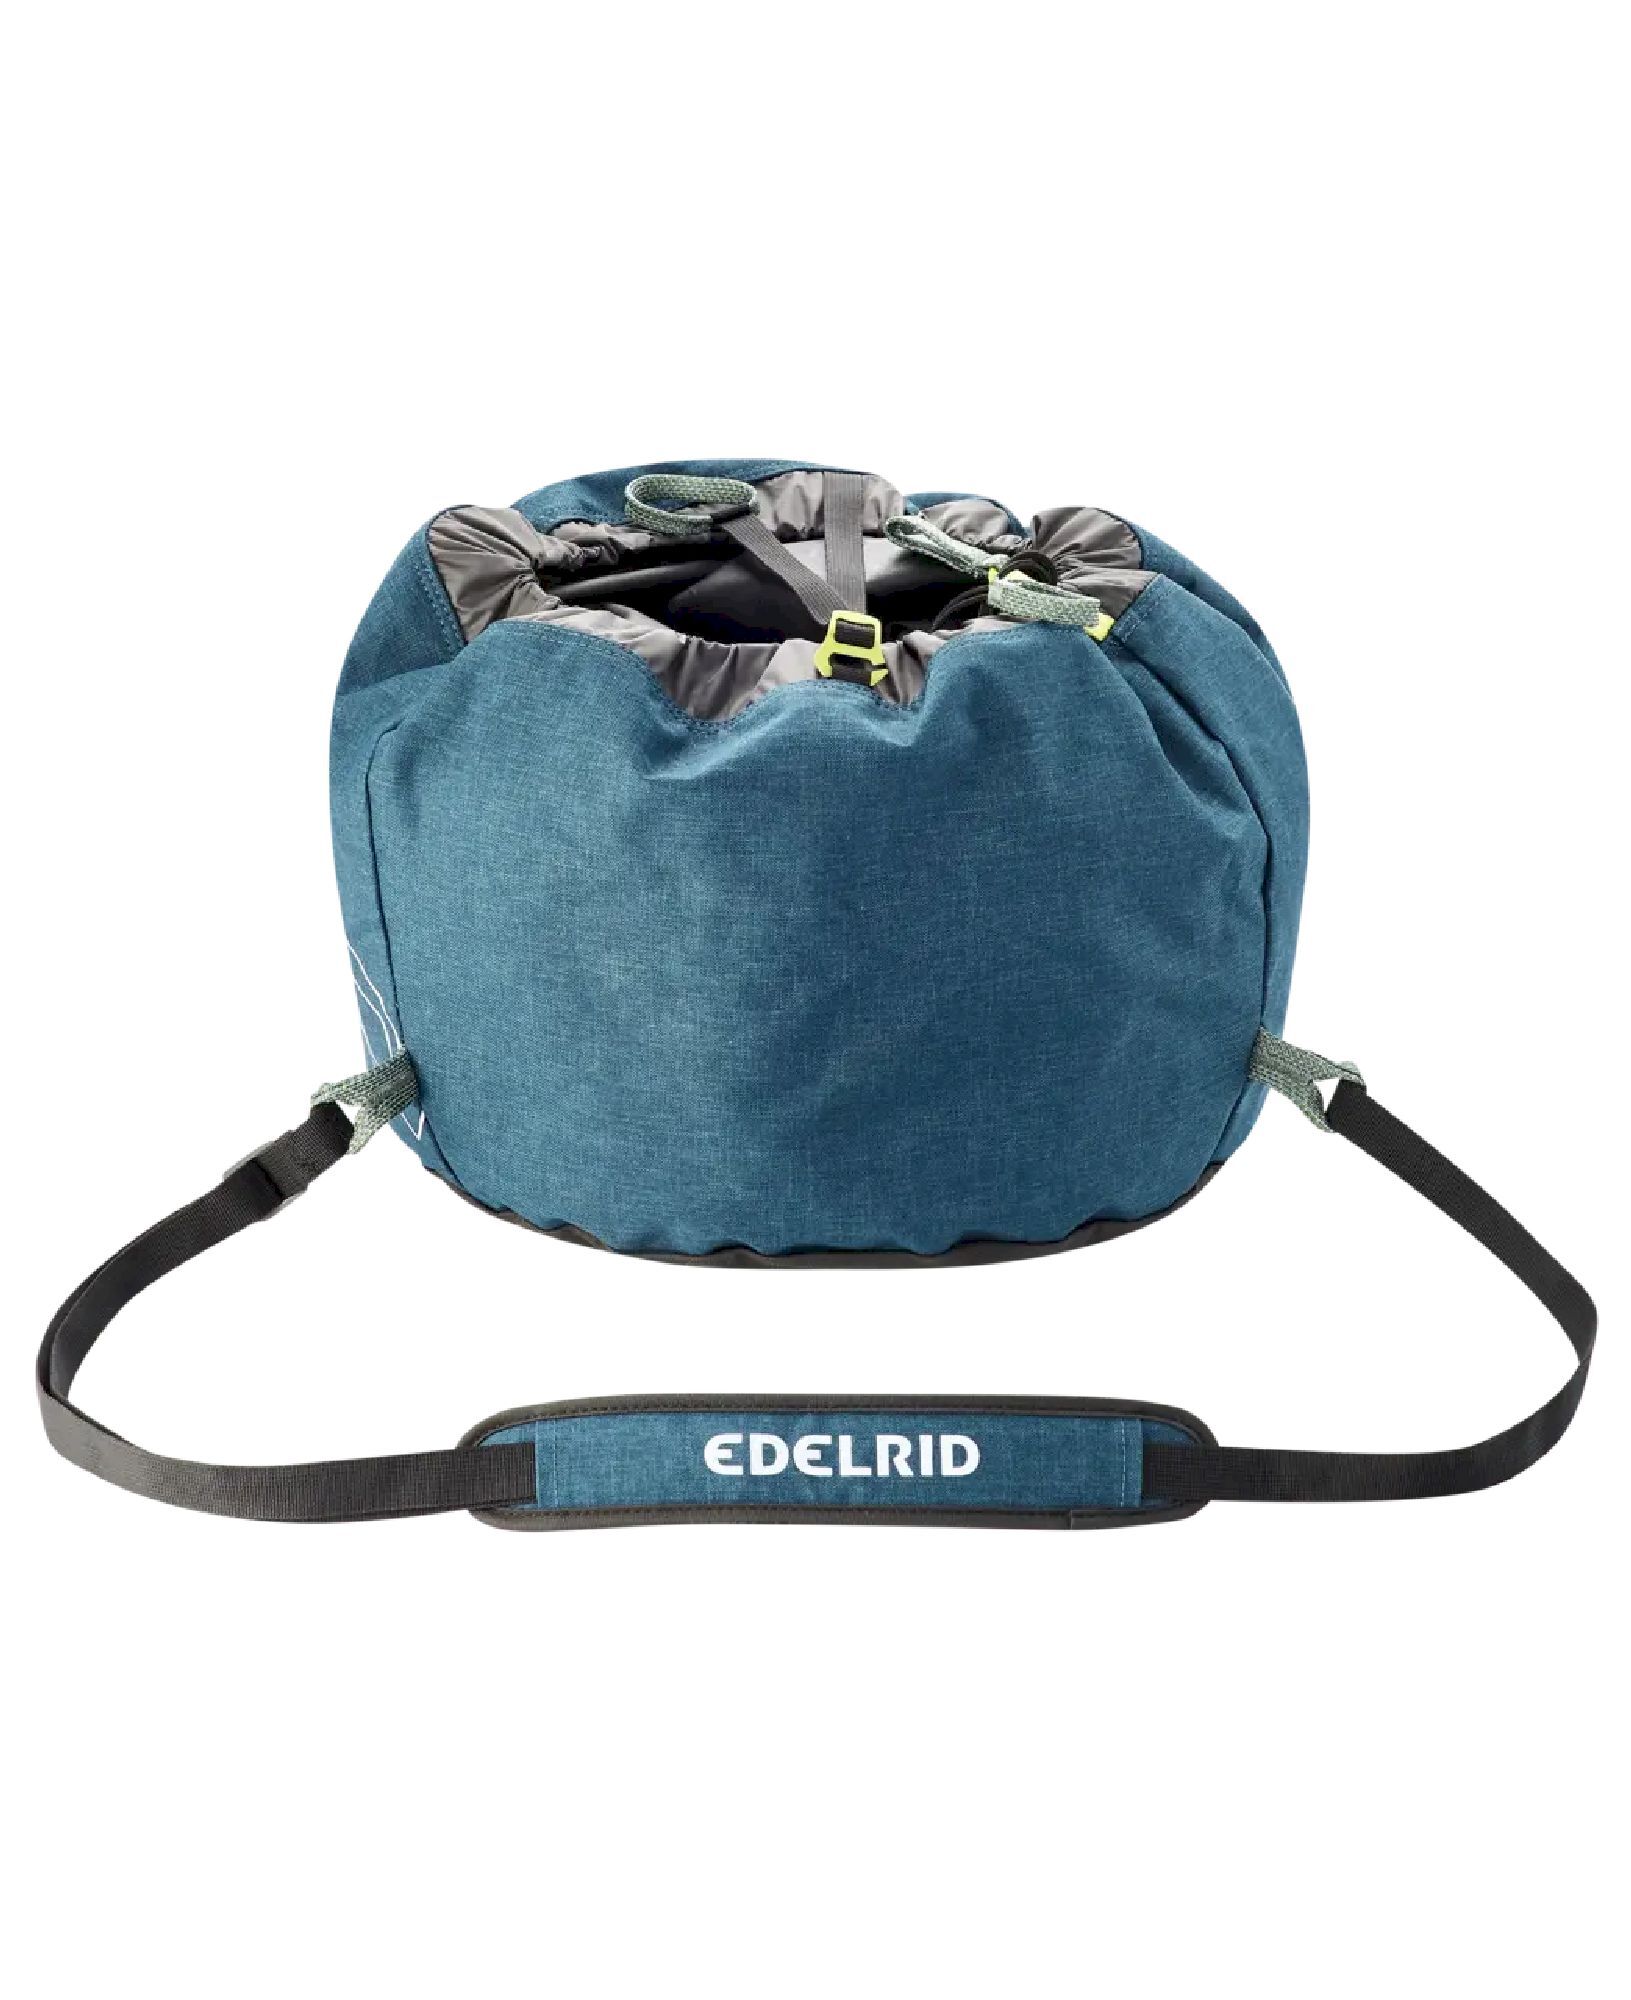 Edelrid Caddy II - Rope bag